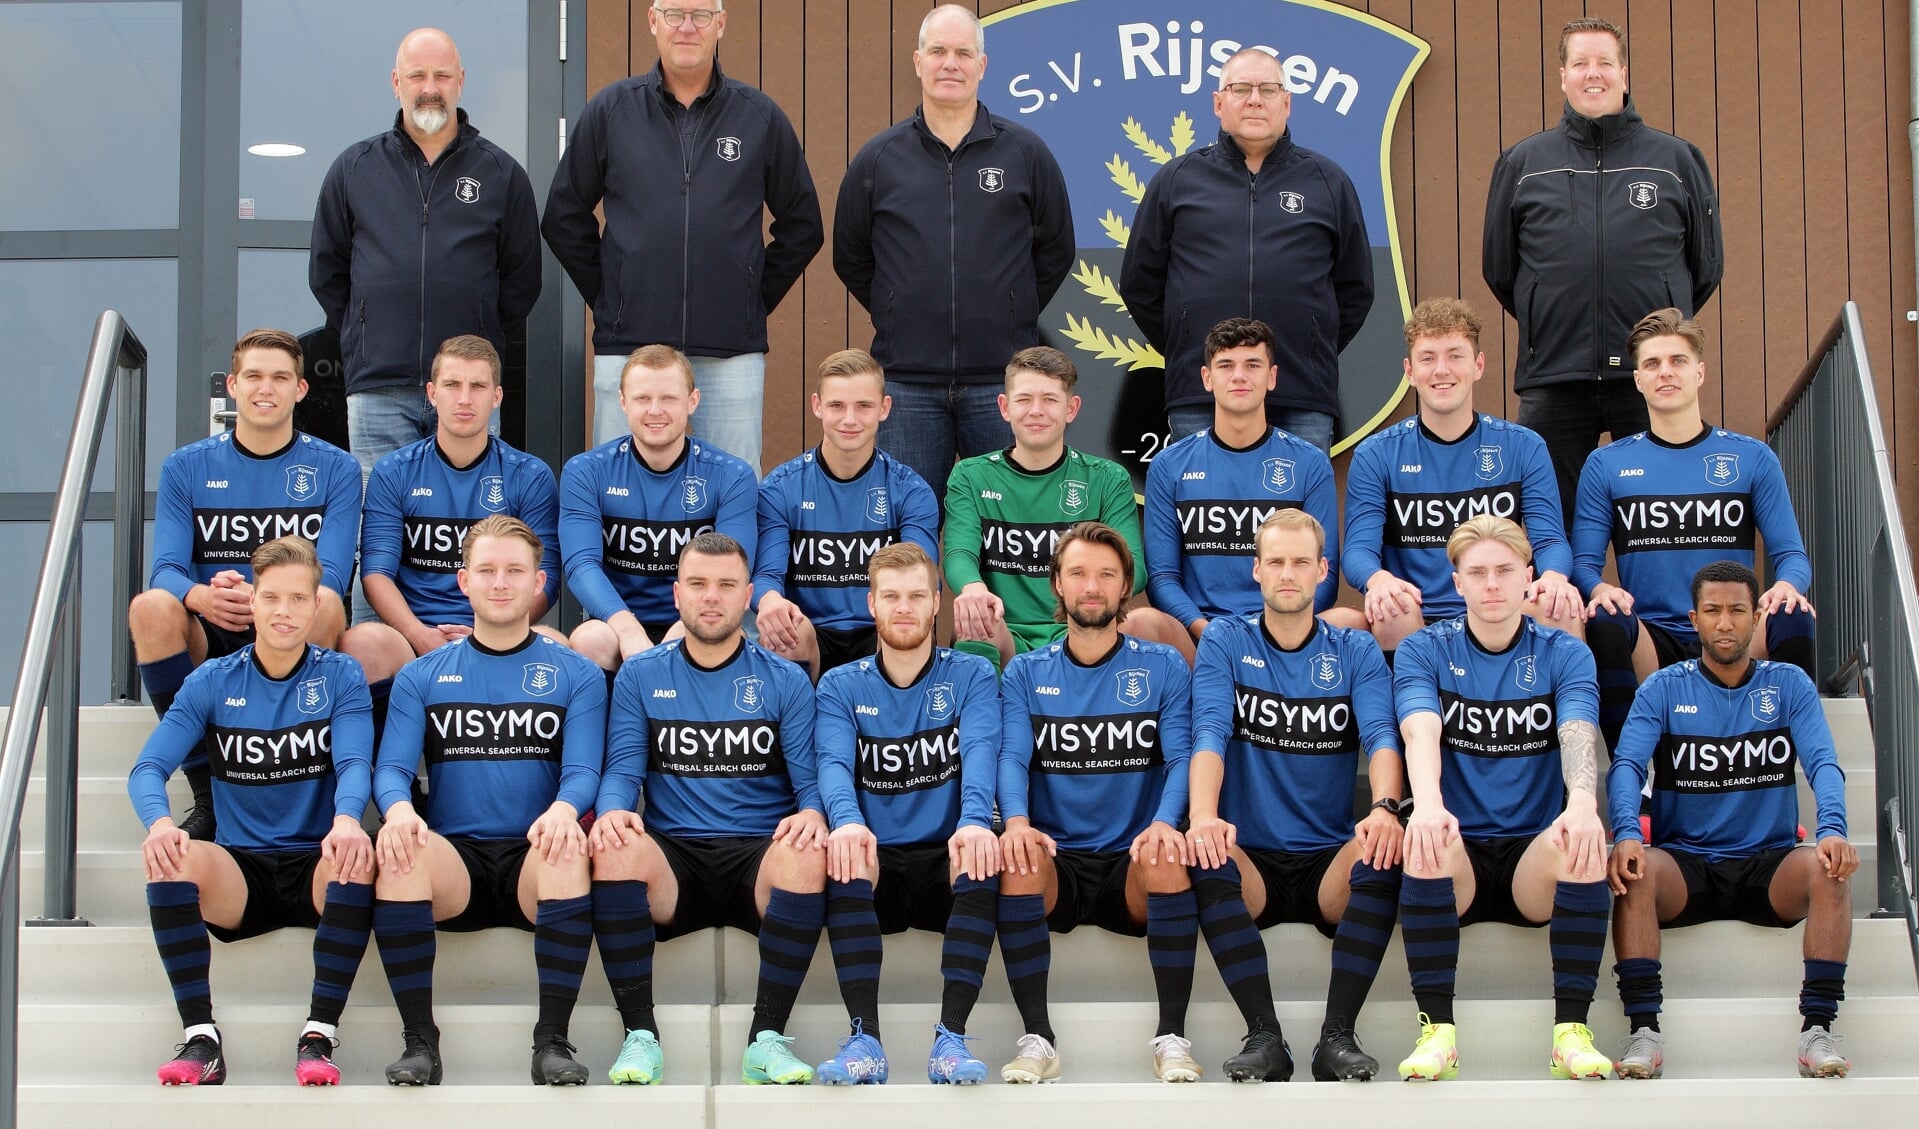 Het eerste elftal van s.v. Rijssen gaat het 20 november opnemen tegen koploper Juventa'12 in Wierden. 